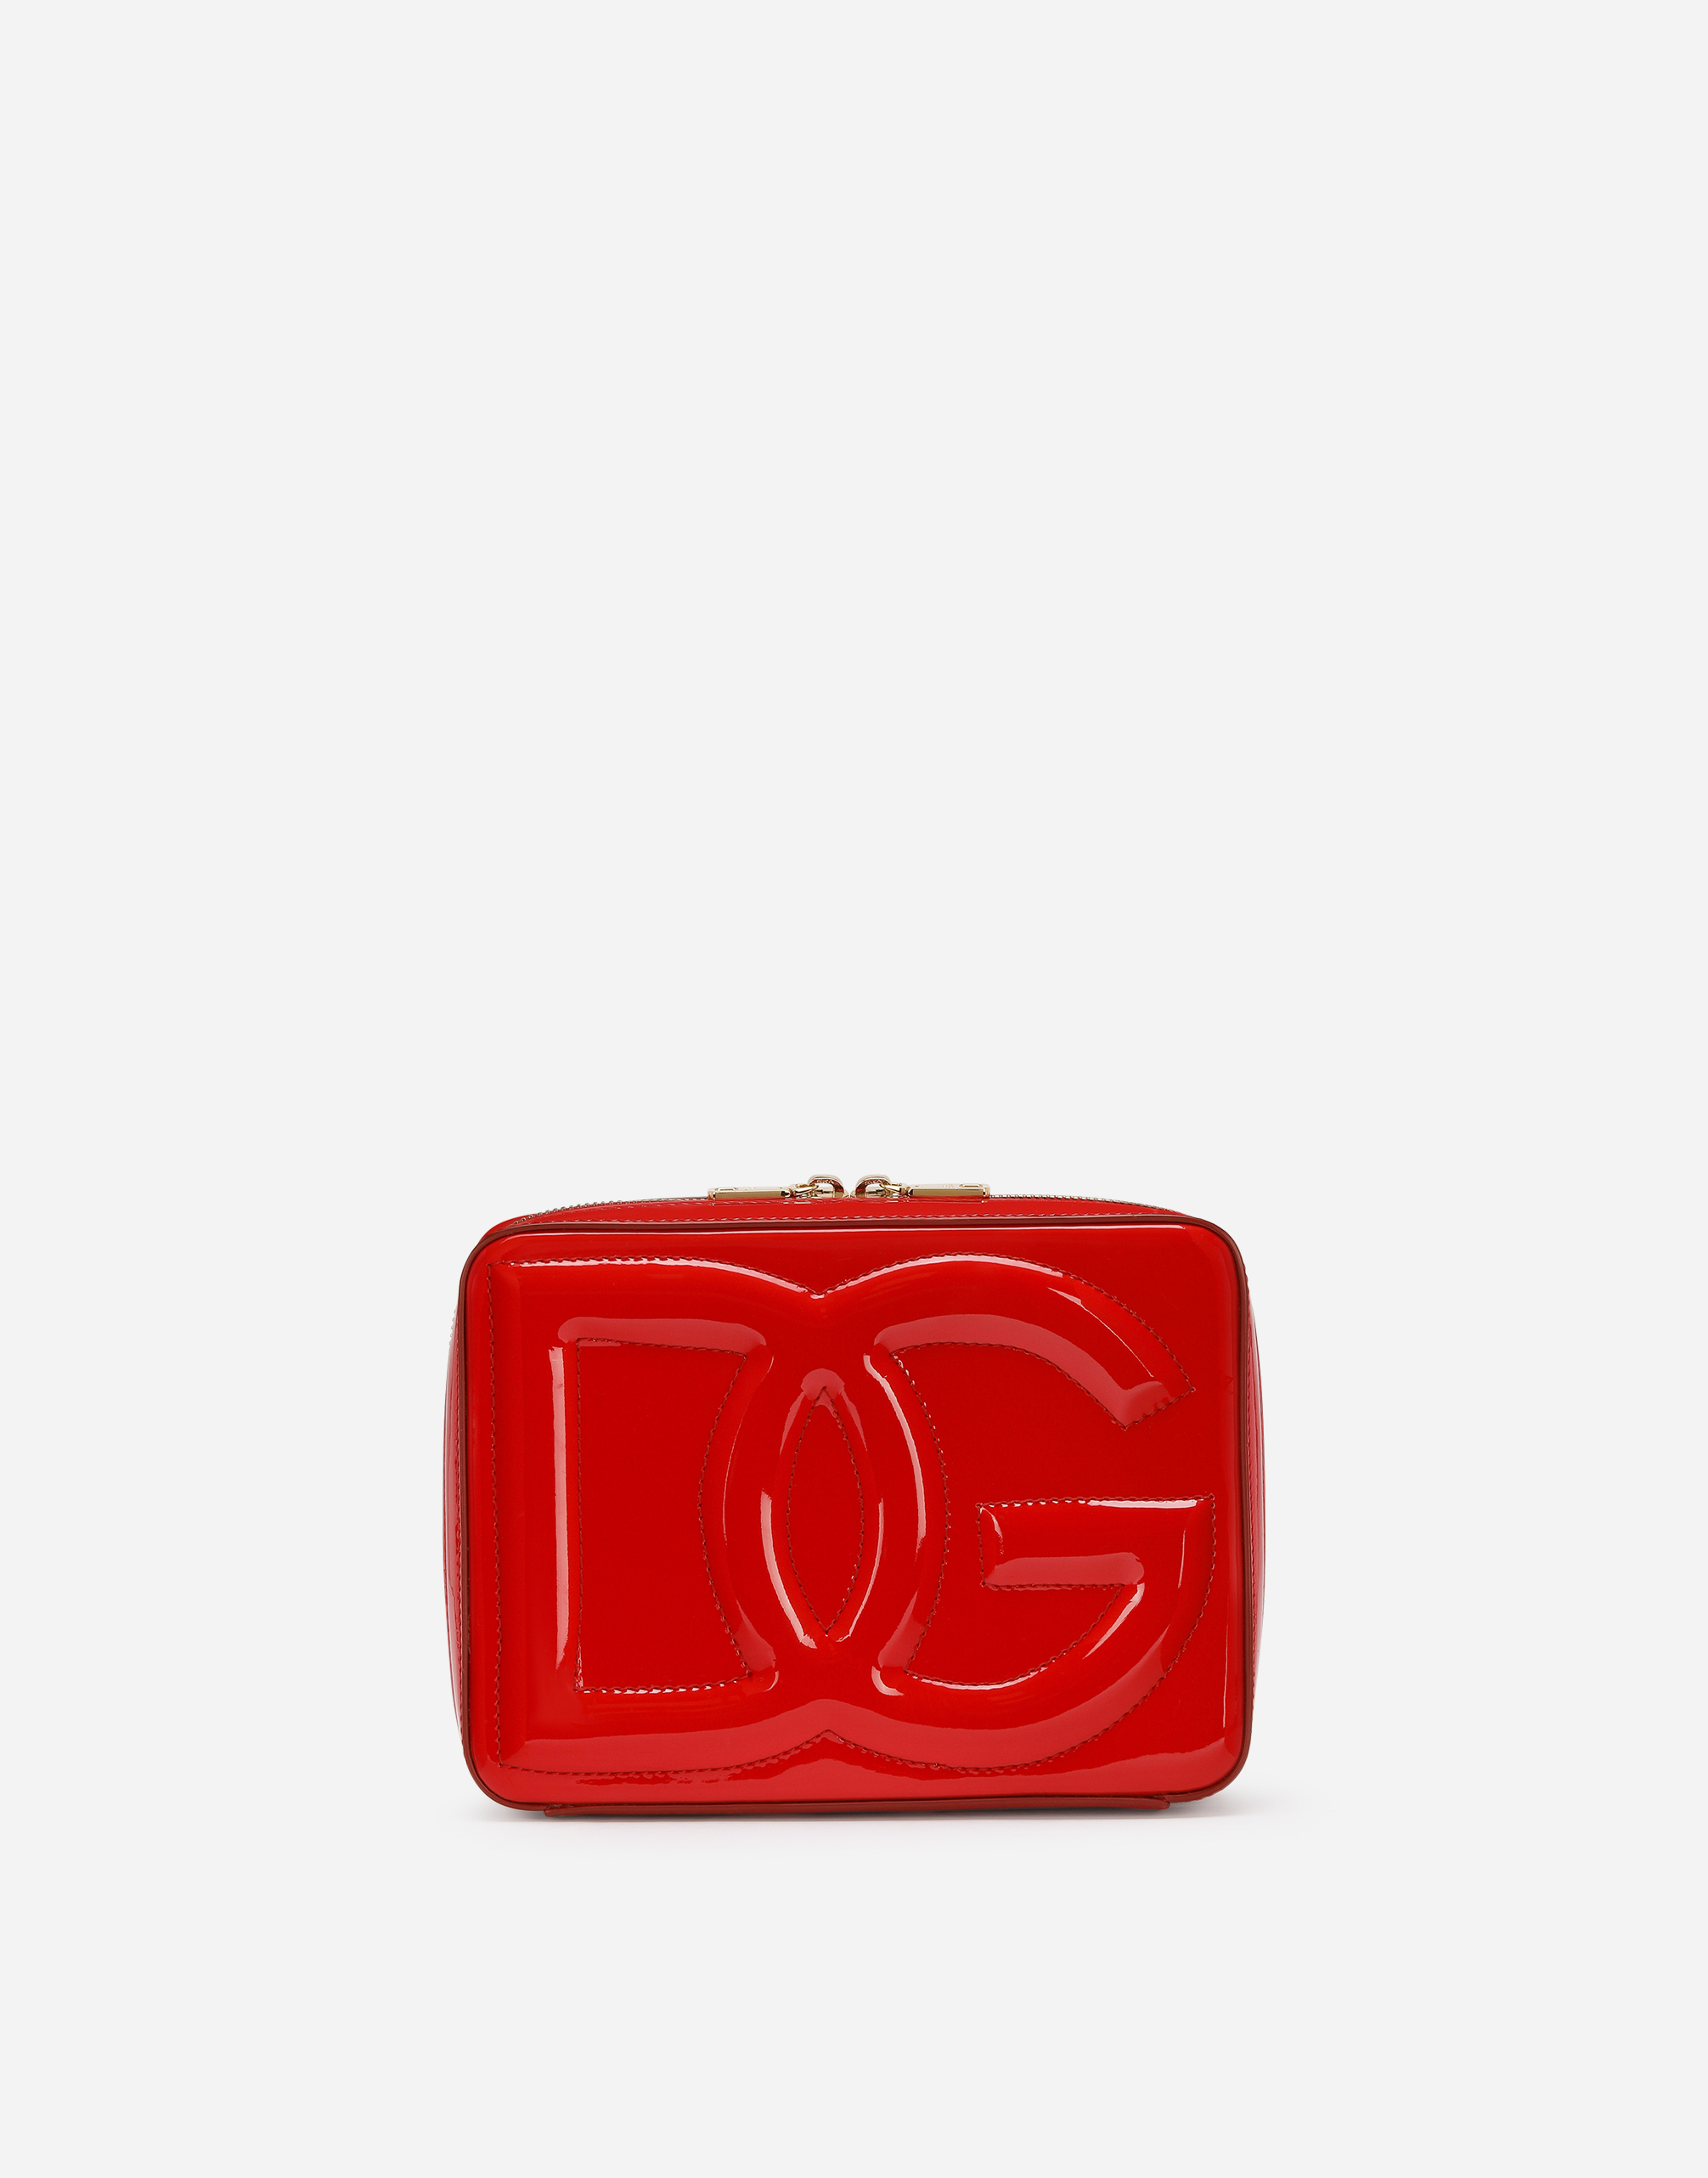 Dolce & Gabbana Patent Leather DG Logo Pumps KATE Black Leopard 39